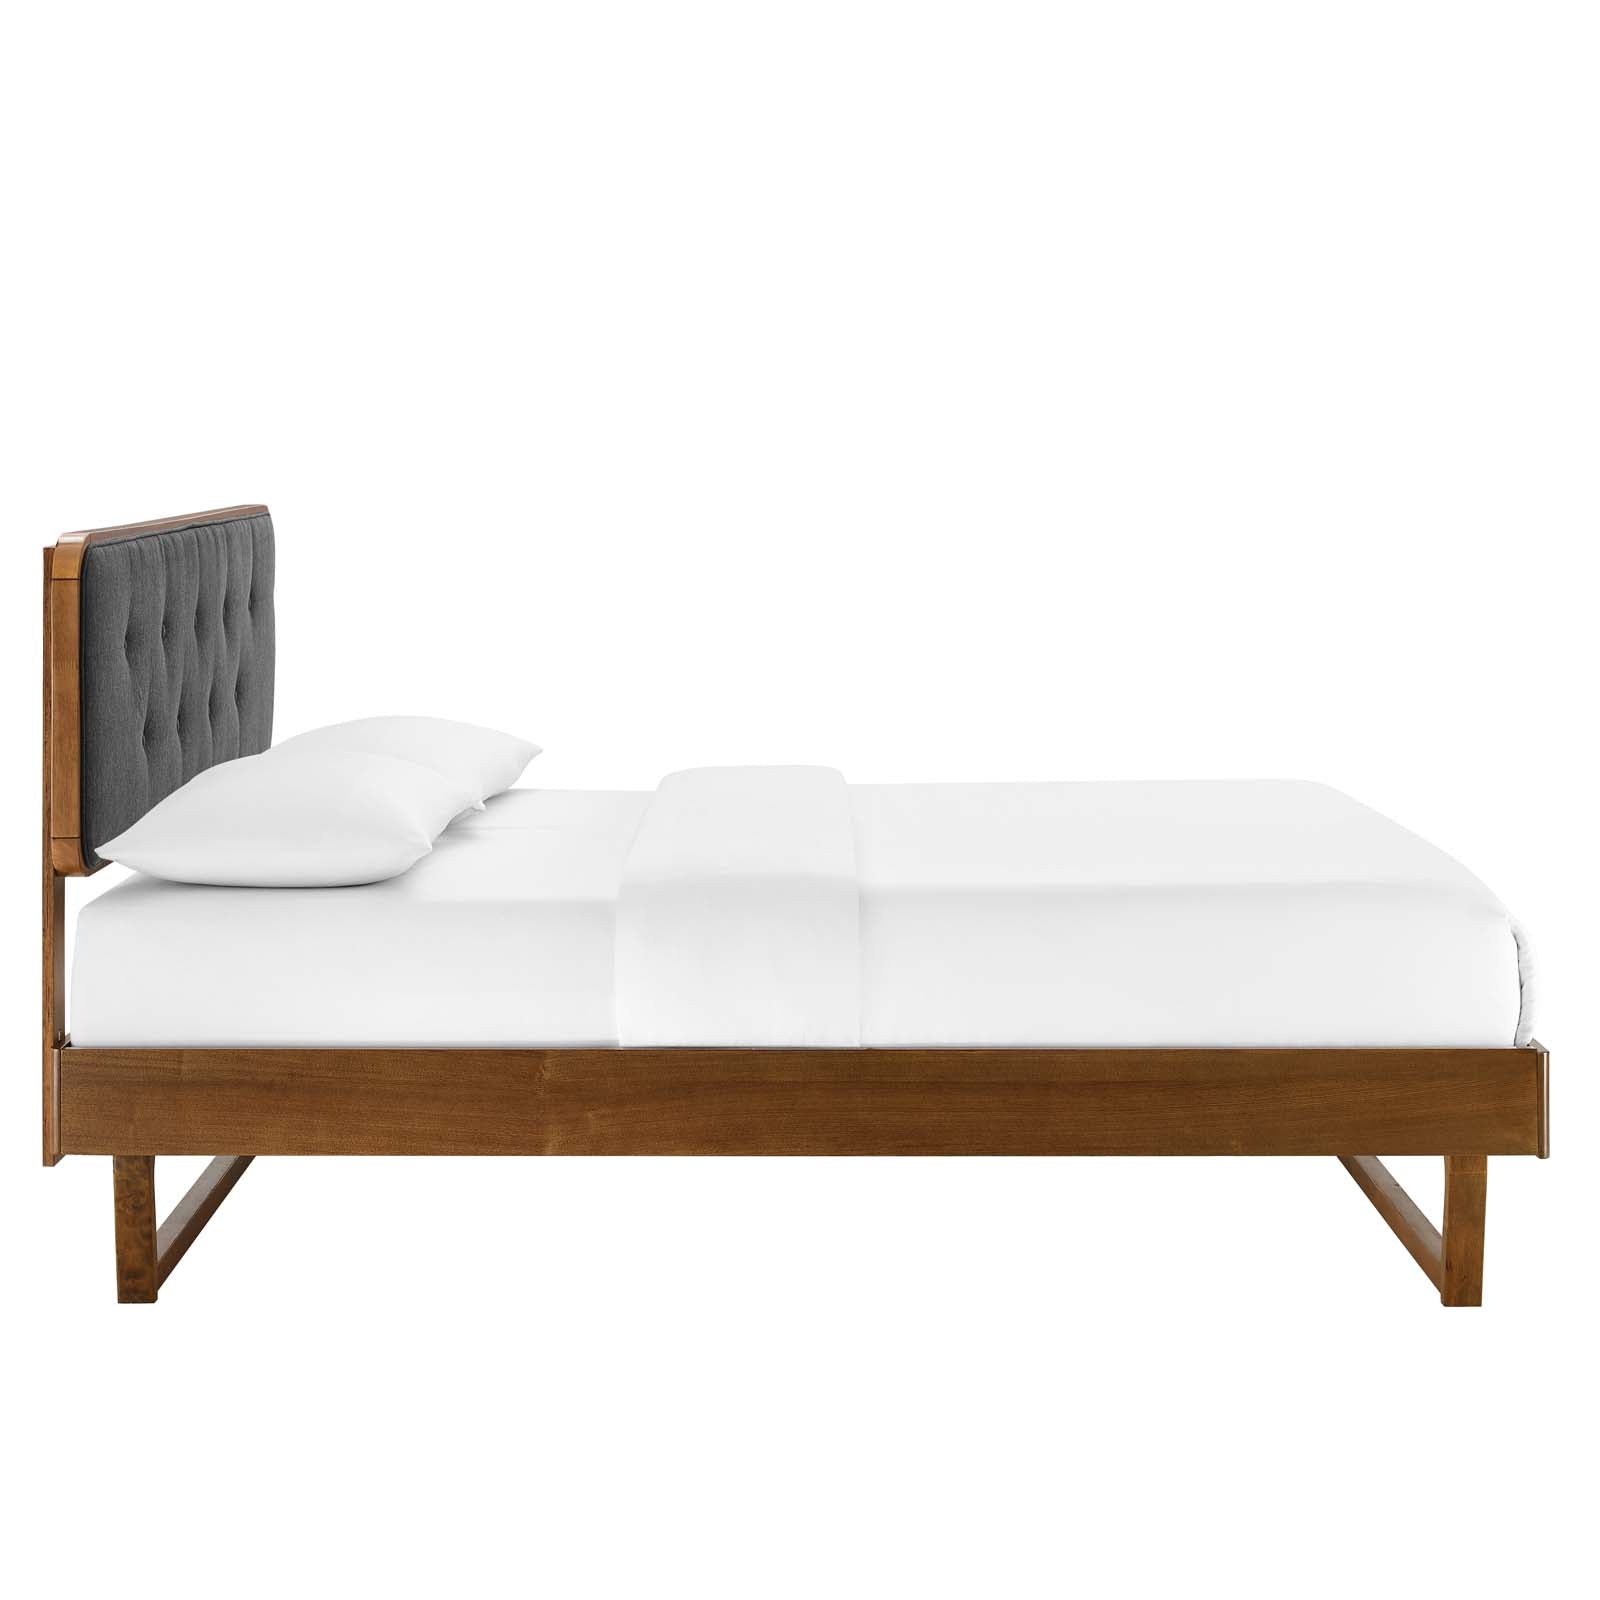 Bridgette King Wood Platform Bed With Angular Frame